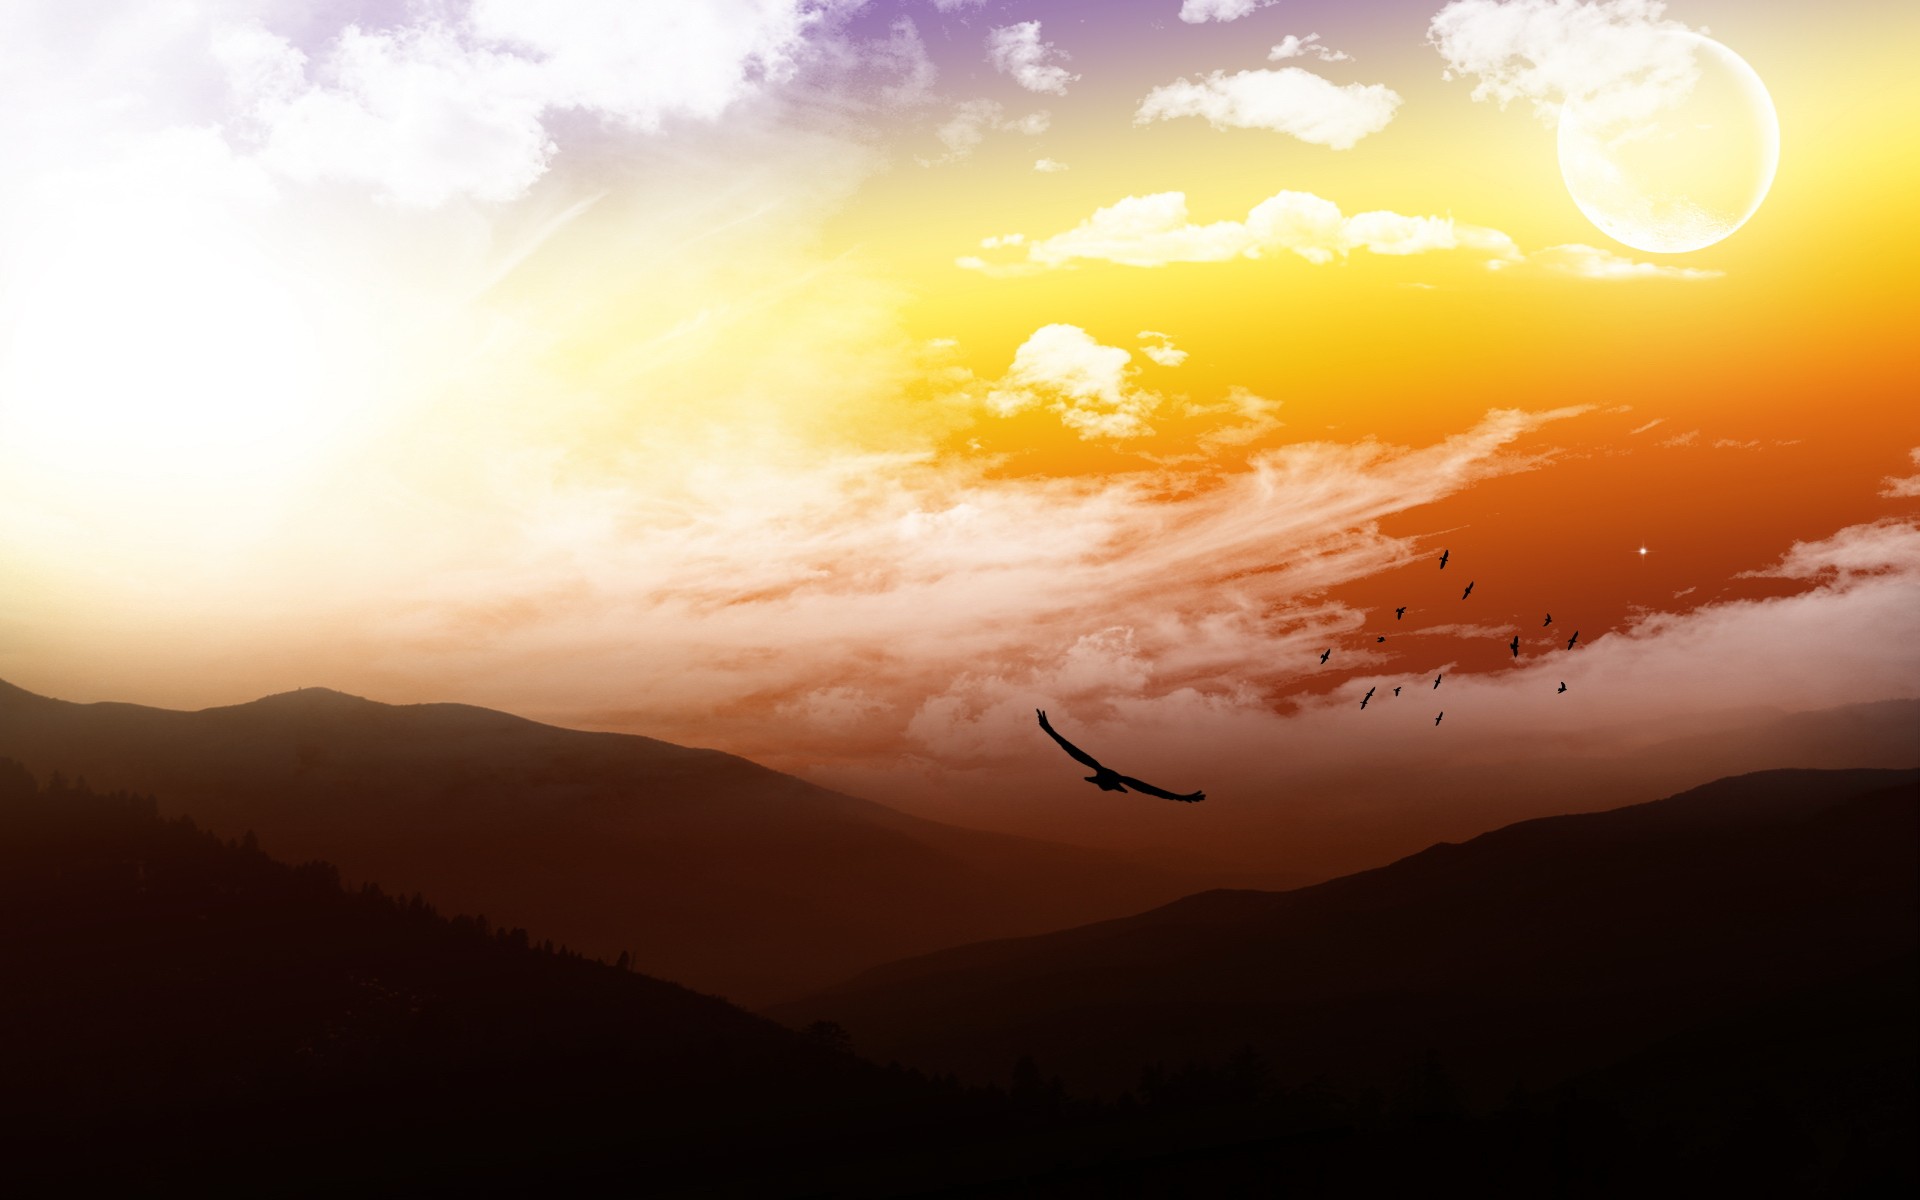 mountains, clouds, landscapes, Sun, birds, skyscapes - desktop wallpaper